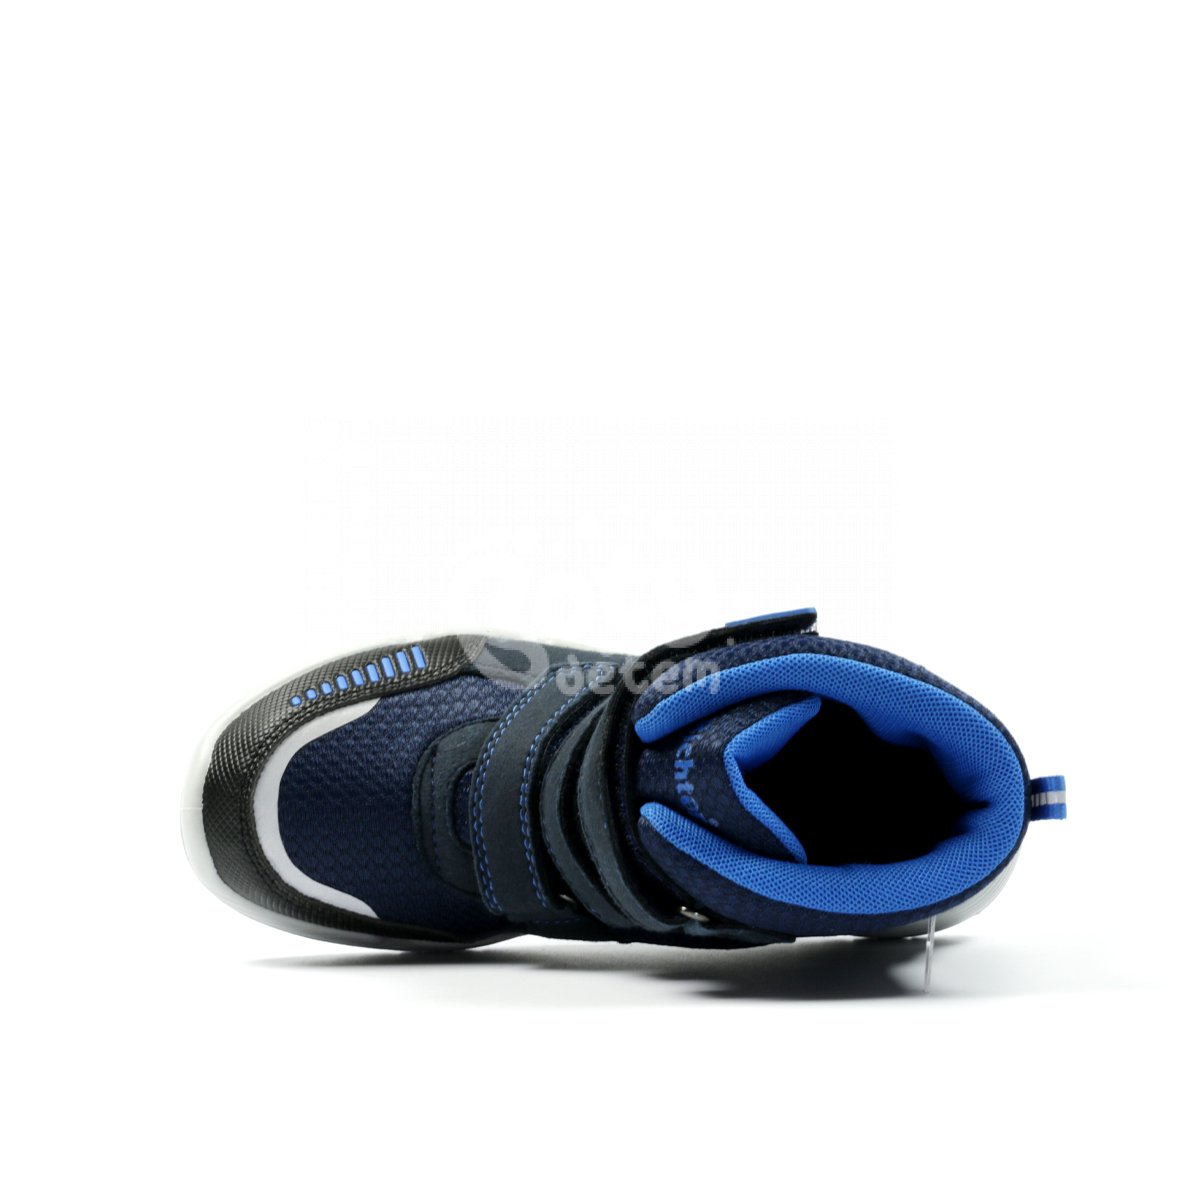 Zimní obuv RS-1 Richter 6355-4191-7200 modrá